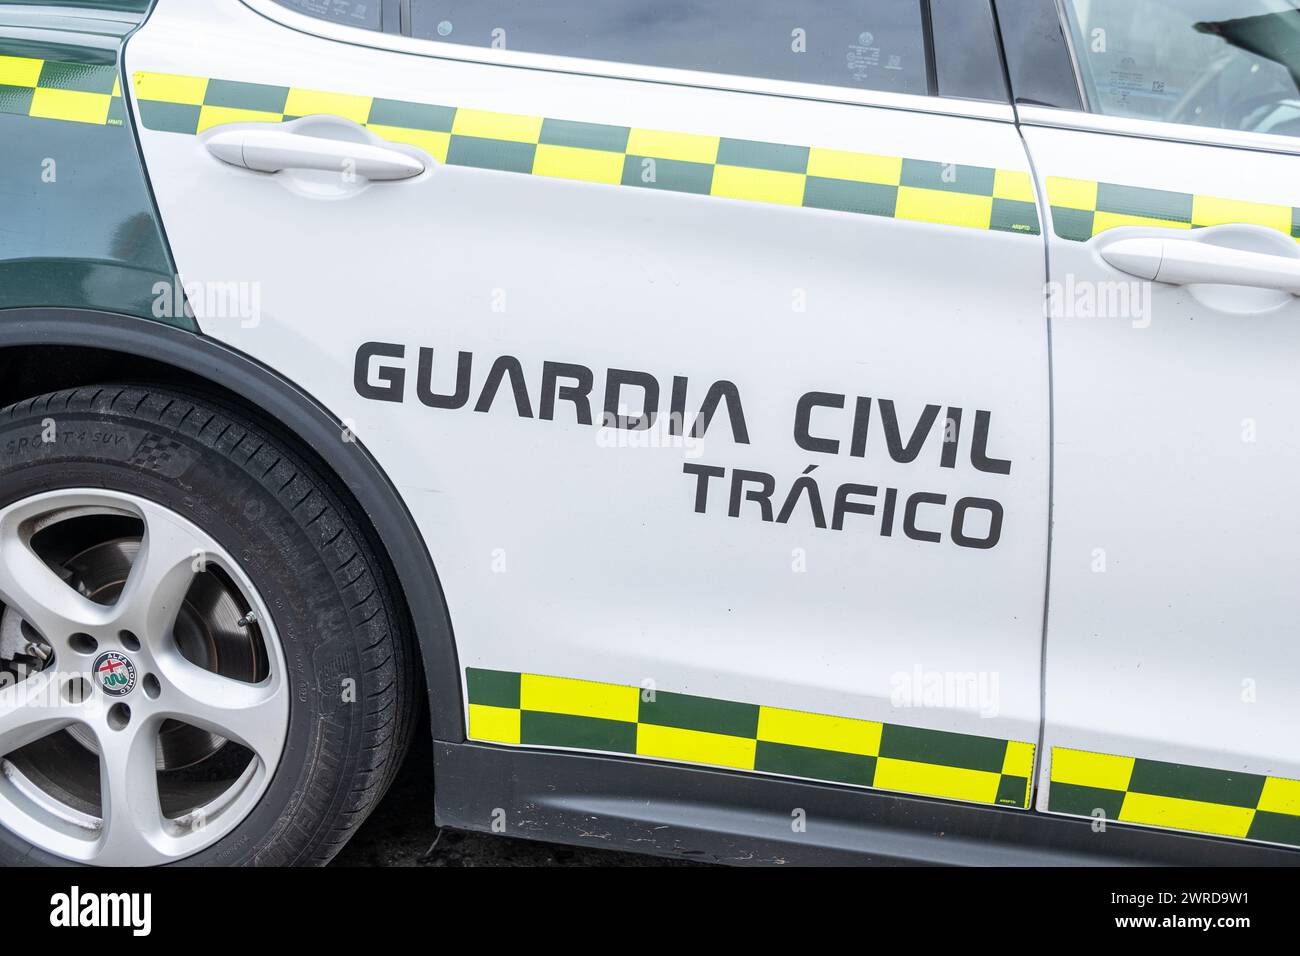 Tür eines Fahrzeugs der Guardia Civil de Trafico (Verkehrspolizei). Spanien Stockfoto